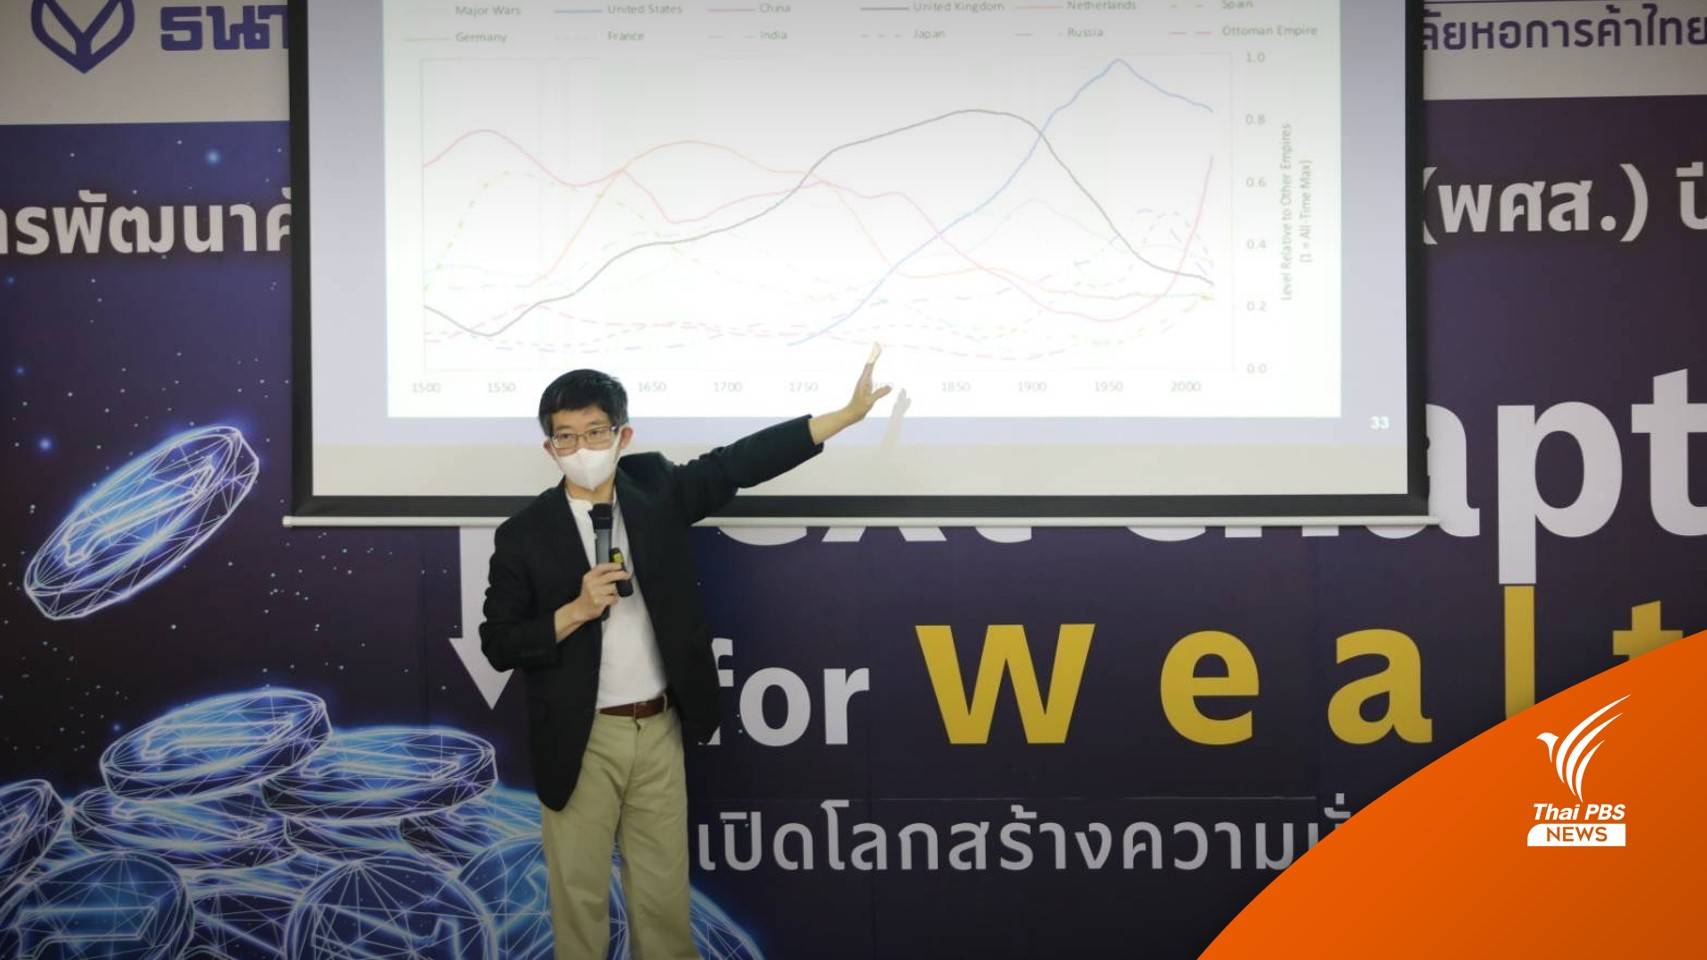 "กอบศักดิ์" ชี้ไทยเผชิญวิกฤตยาว 2 ปีลุ้น กนง. จ่อขึ้นดอกเบี้ย 0.75%